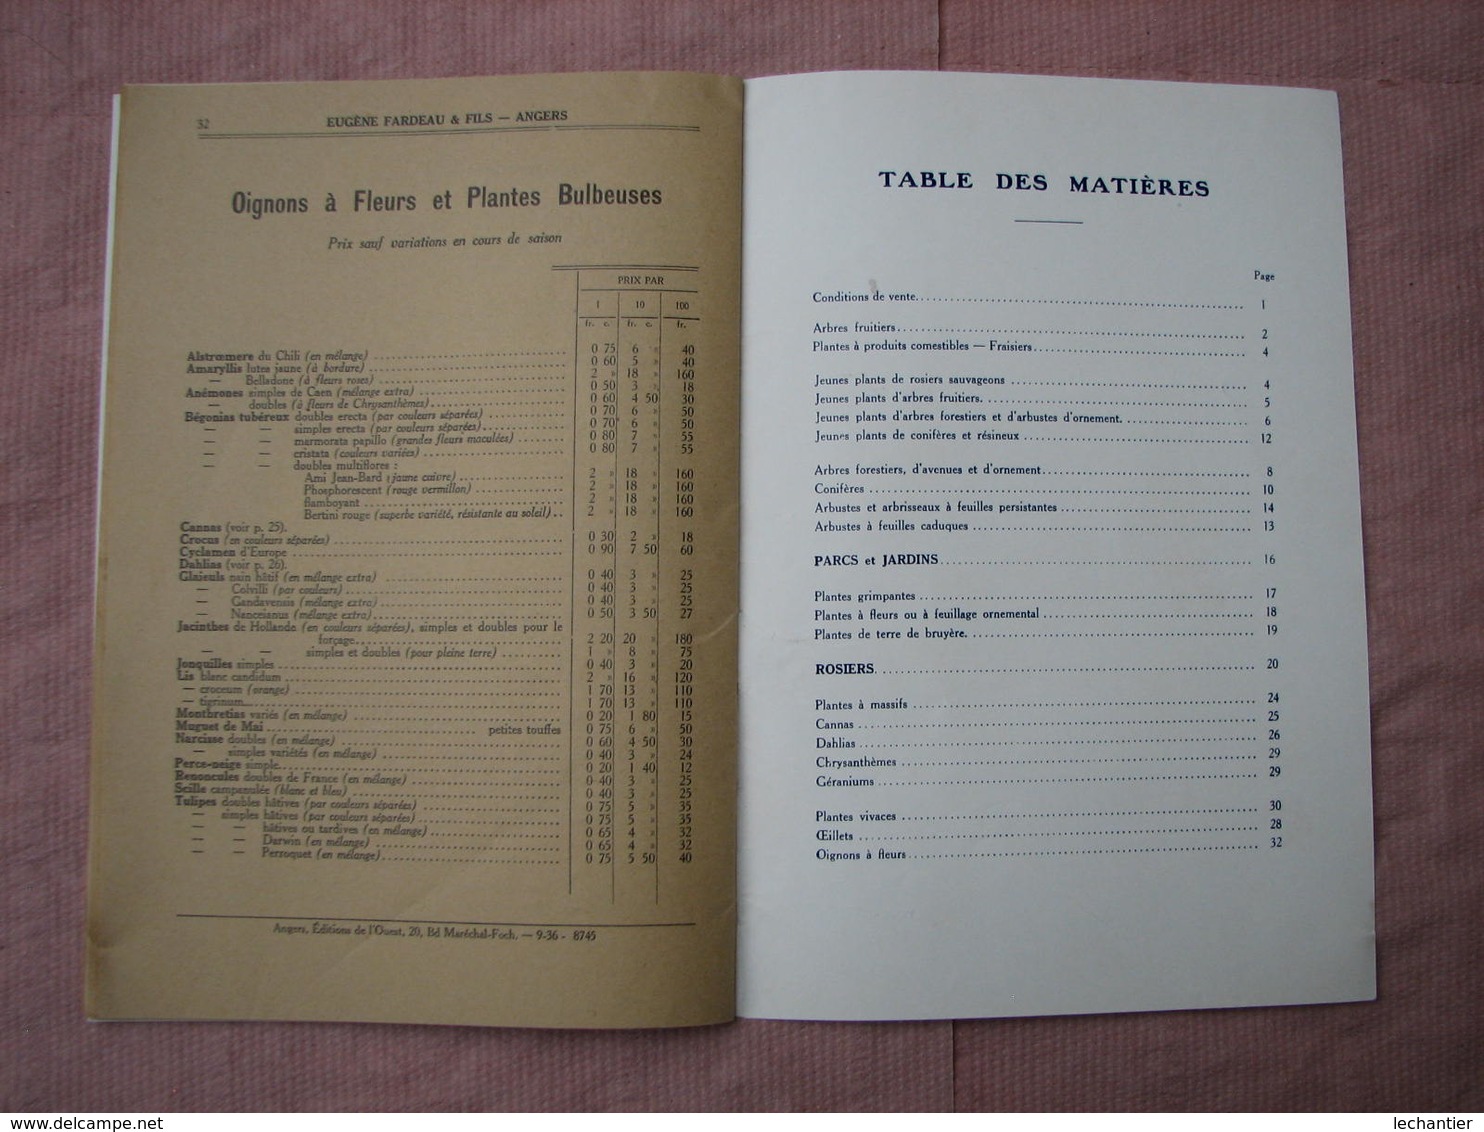 ANGERS, Eugéne FARDEAU et Fils catalogue 1936-1937 86-88 rue des Ponts de Cé ,Ets. Horticole-Pépinières. TBE